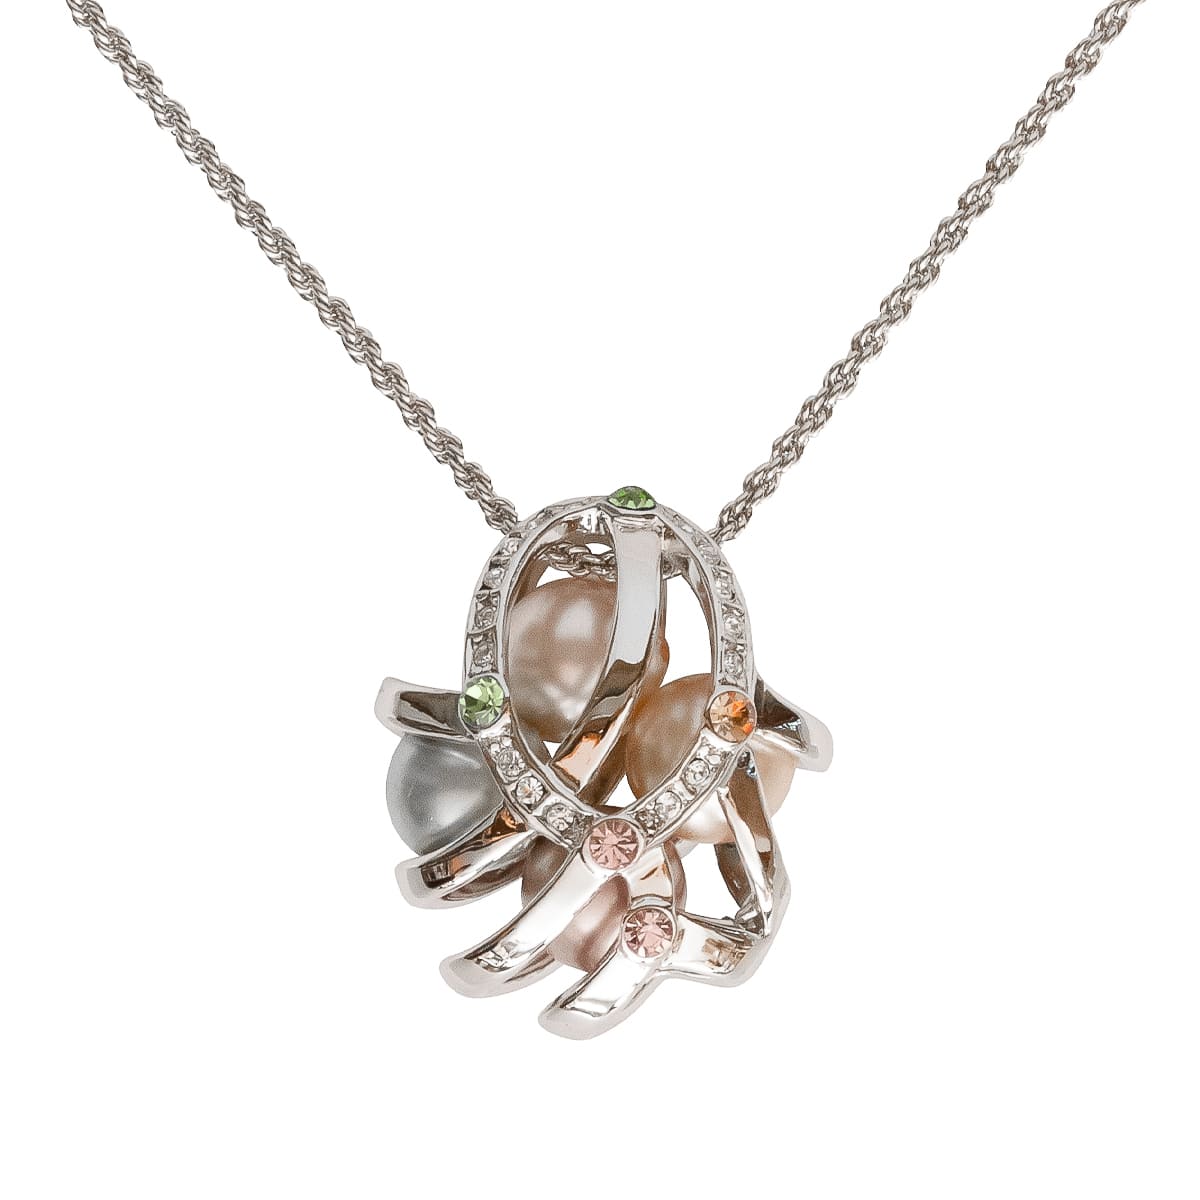 K.V. Fuchs Design Schmuck Damen Halskette in silber mit Perlen in beige, grün, rosa und Zirkonia in blau, grün, rosa, topas, weiß »K-2919«